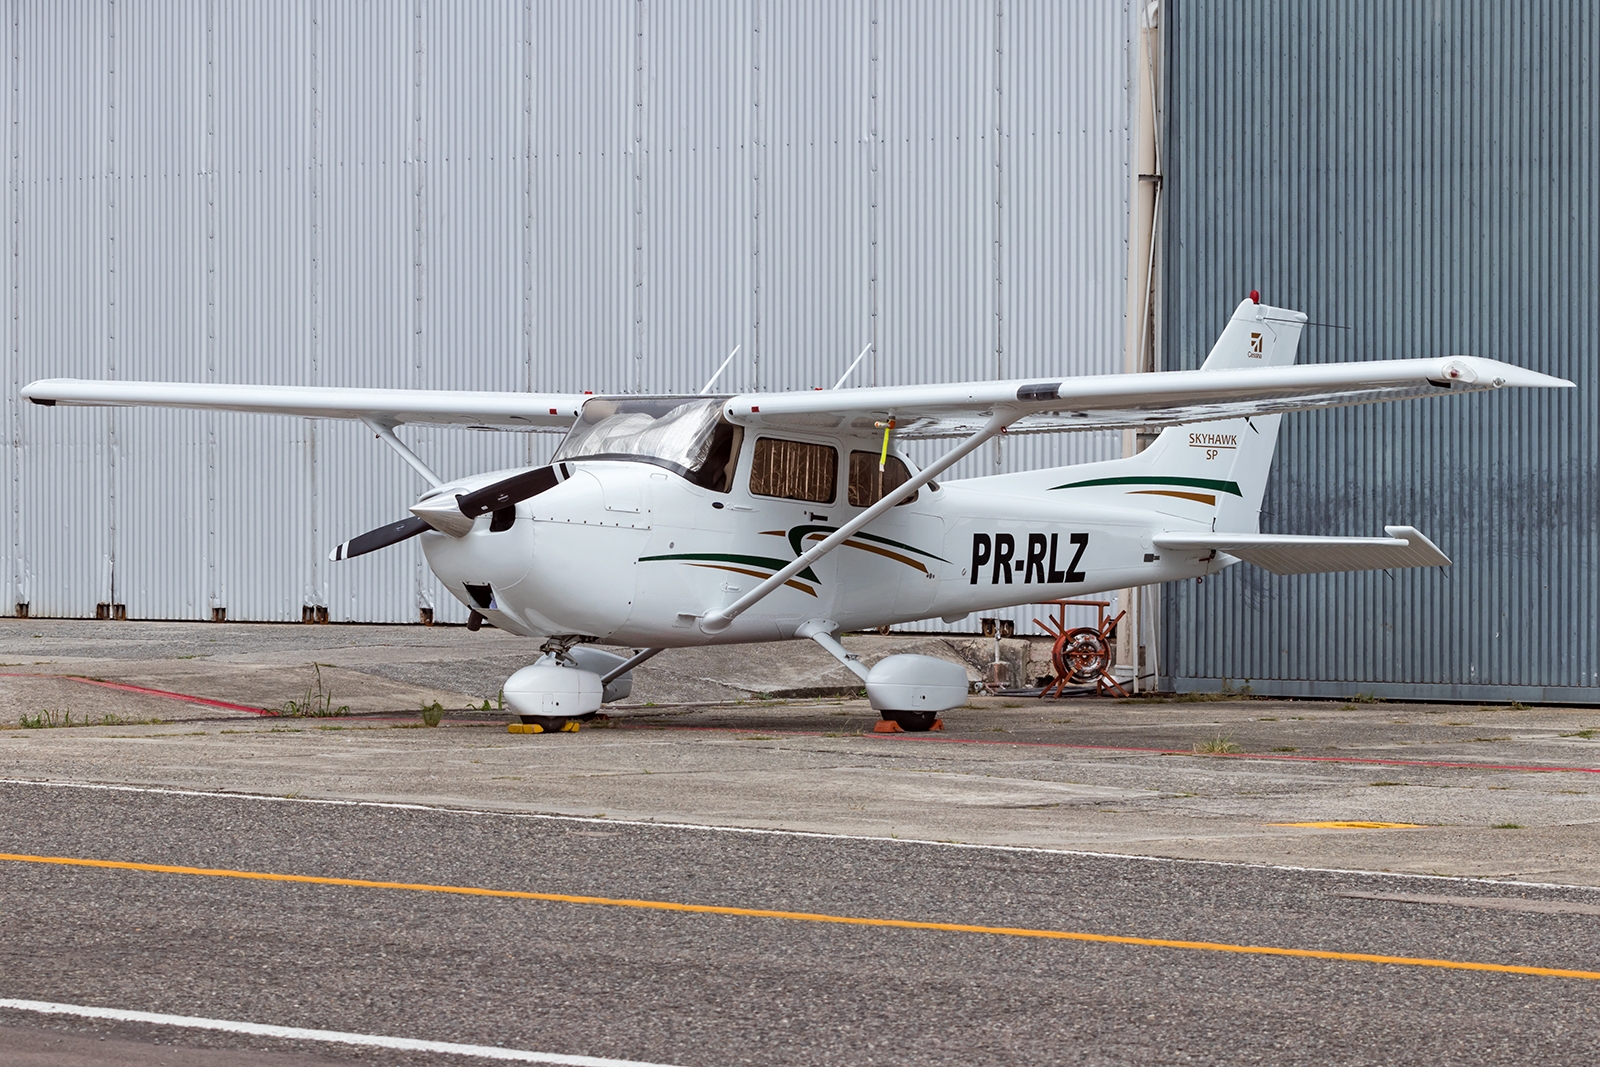 PR-RLZ - Cessna 172 Skyhawk